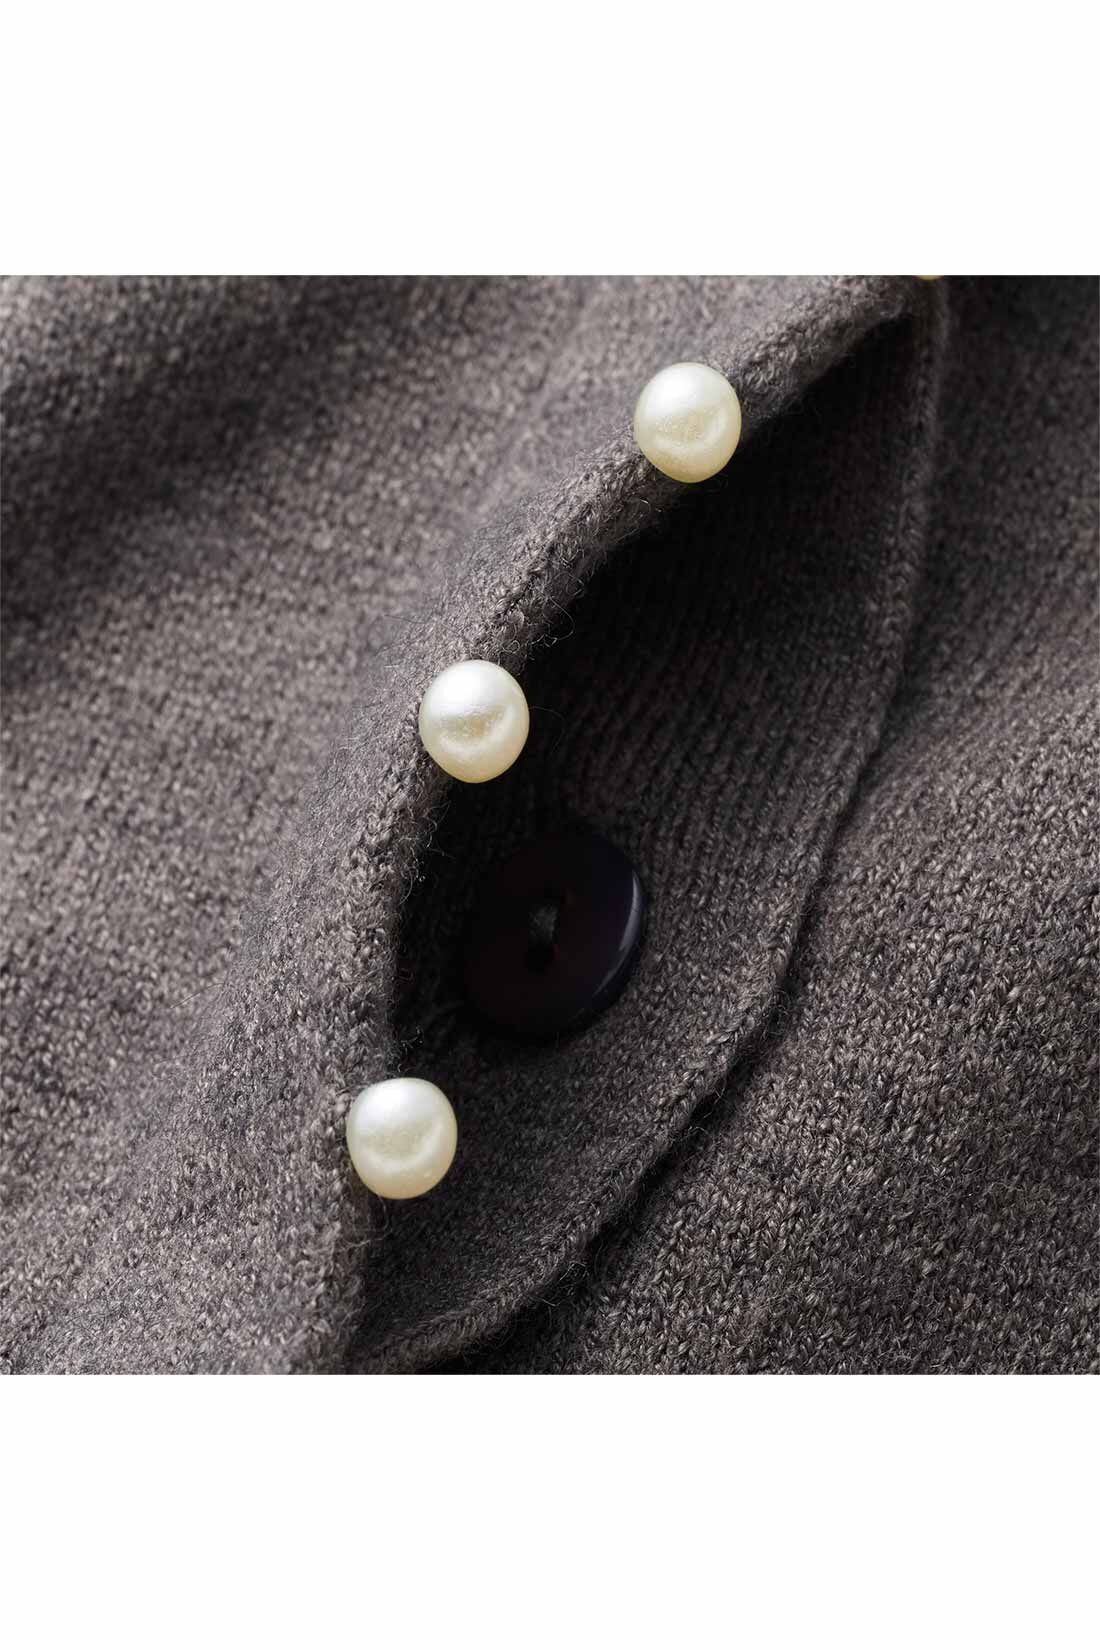 IEDIT[イディット]　アクセサリーみたいなミニパールが上品な 柄編み袖のカーディガン〈グレー〉|フロントボタンを隠した比翼仕立て。パールの飾りが引き立つデザインに。 ※お届けするカラーとは異なります。